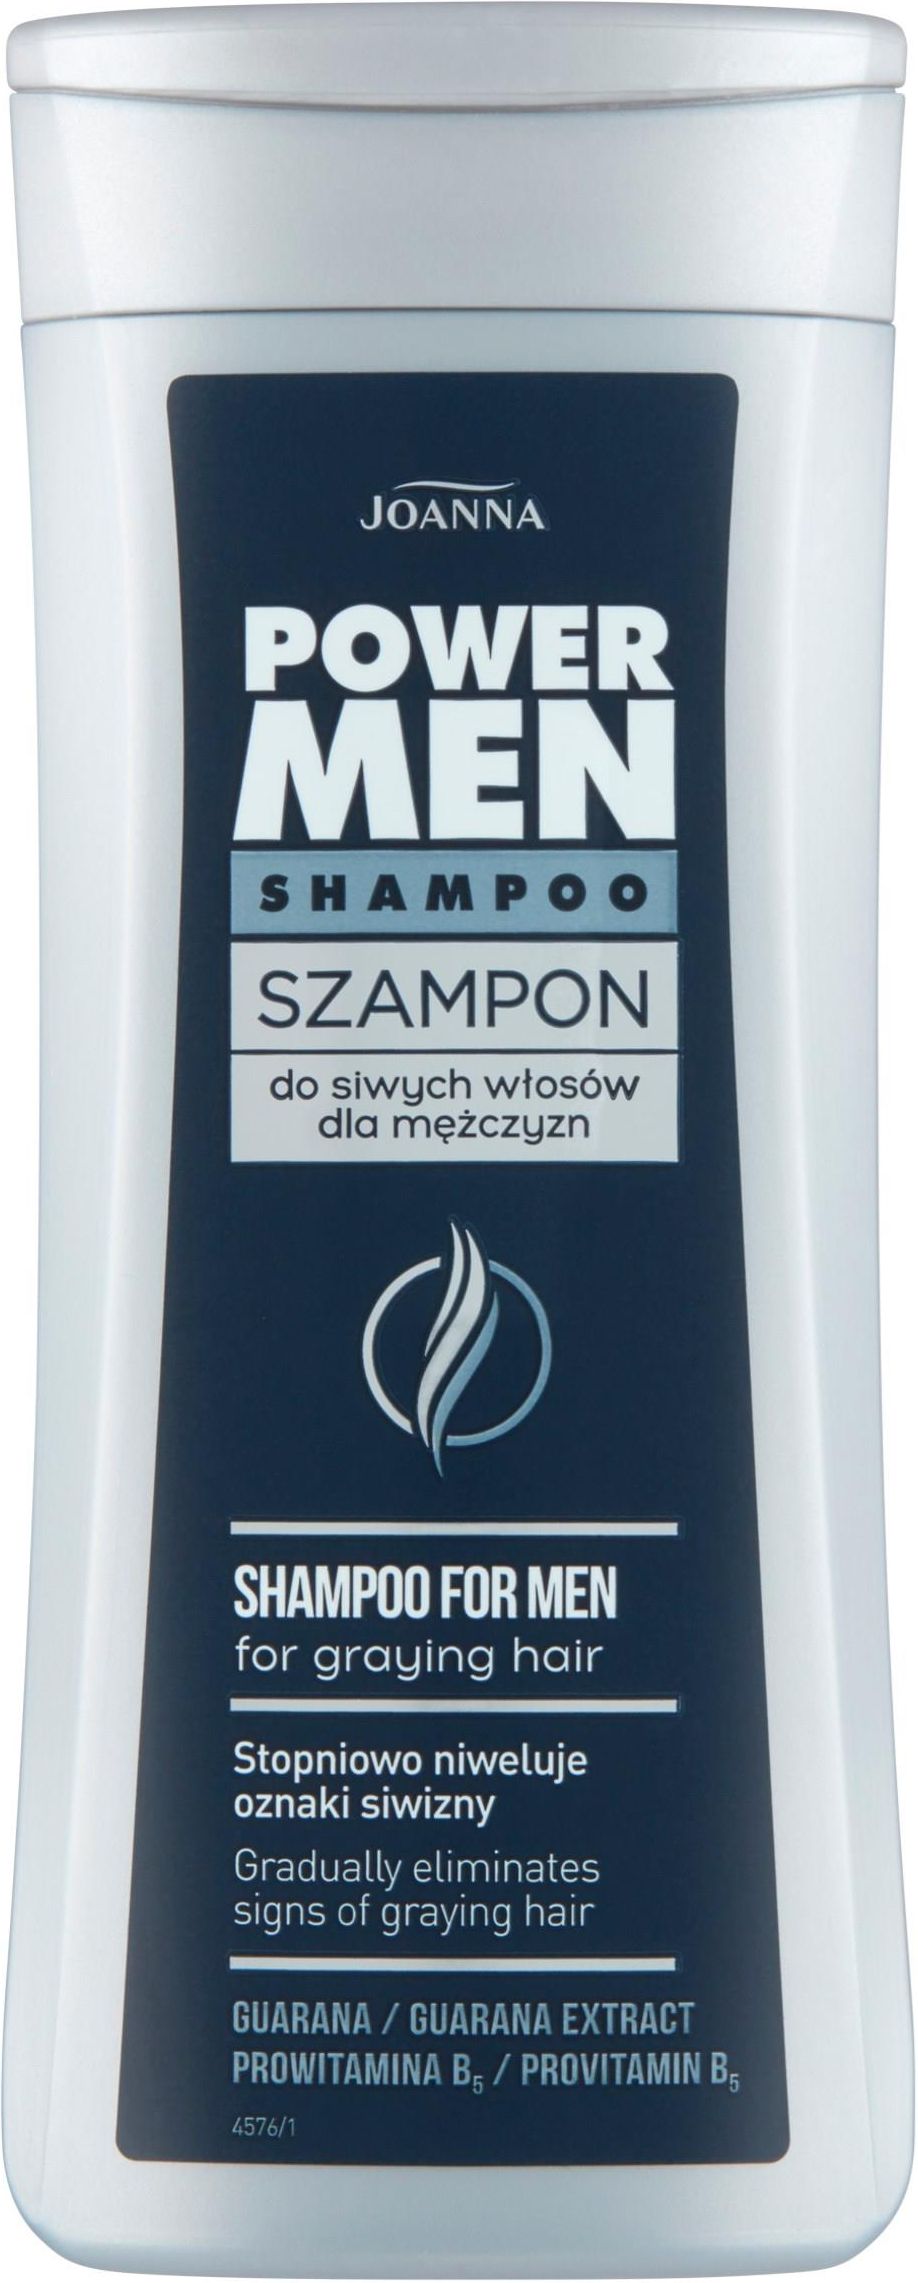 szampon do włosów siwych dla mężczyzn